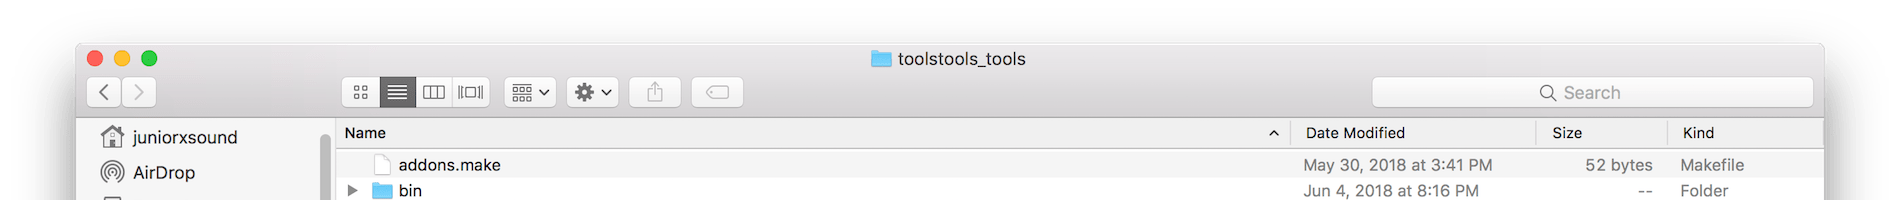 ToolsTools.Tools